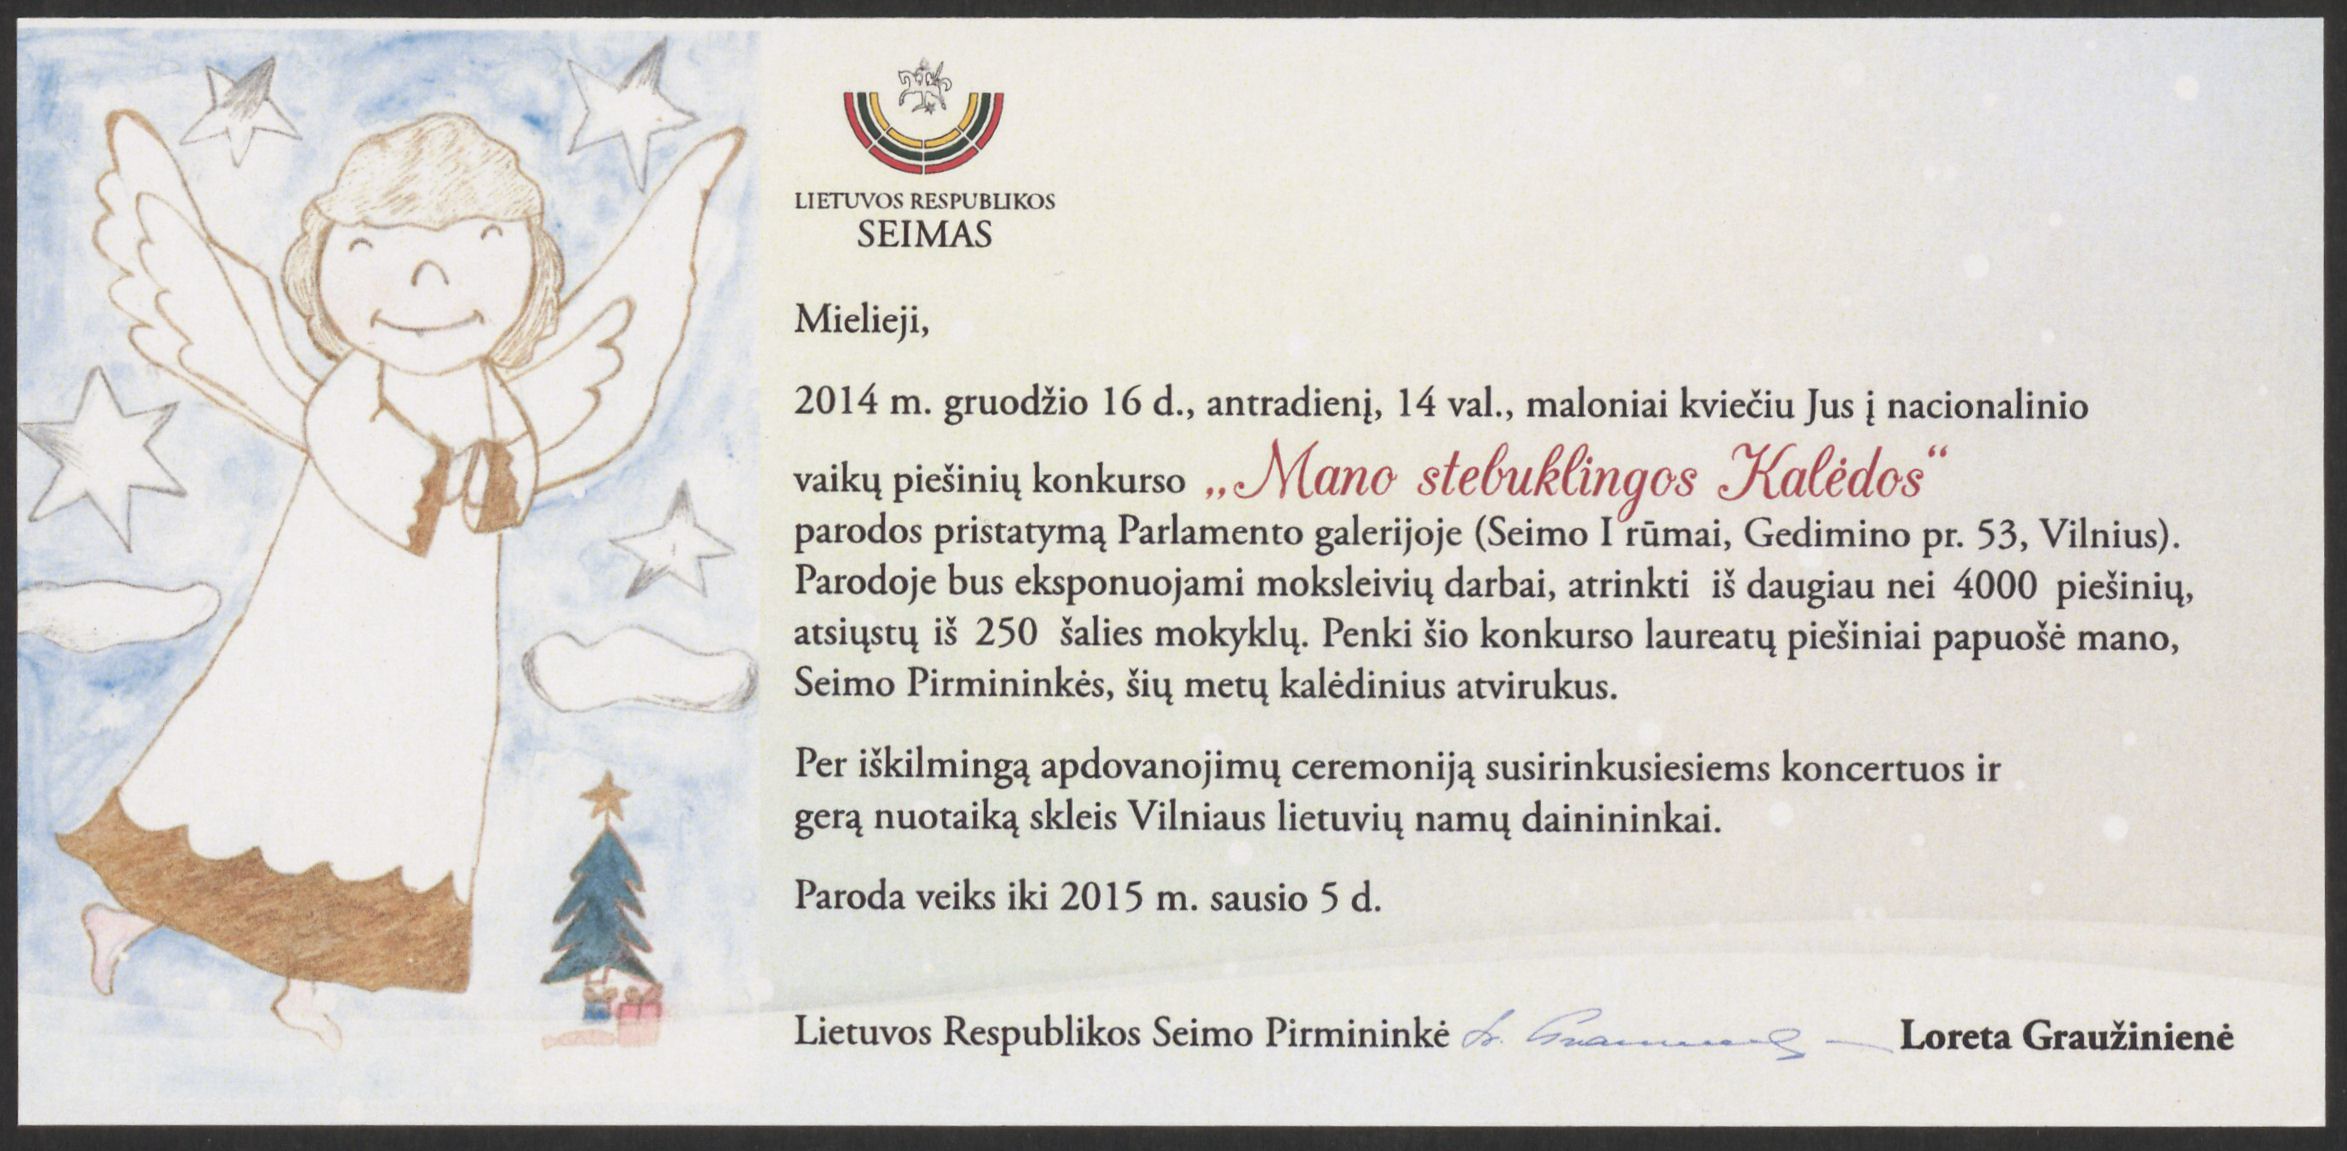 Lietuvos Respublikos Seimo pirmininkės Loretos Graužinienės kvietimas dalyvauti vaikų piešinių konkurso „Mano stebuklingos Kalėdos“ parodos pristatyme